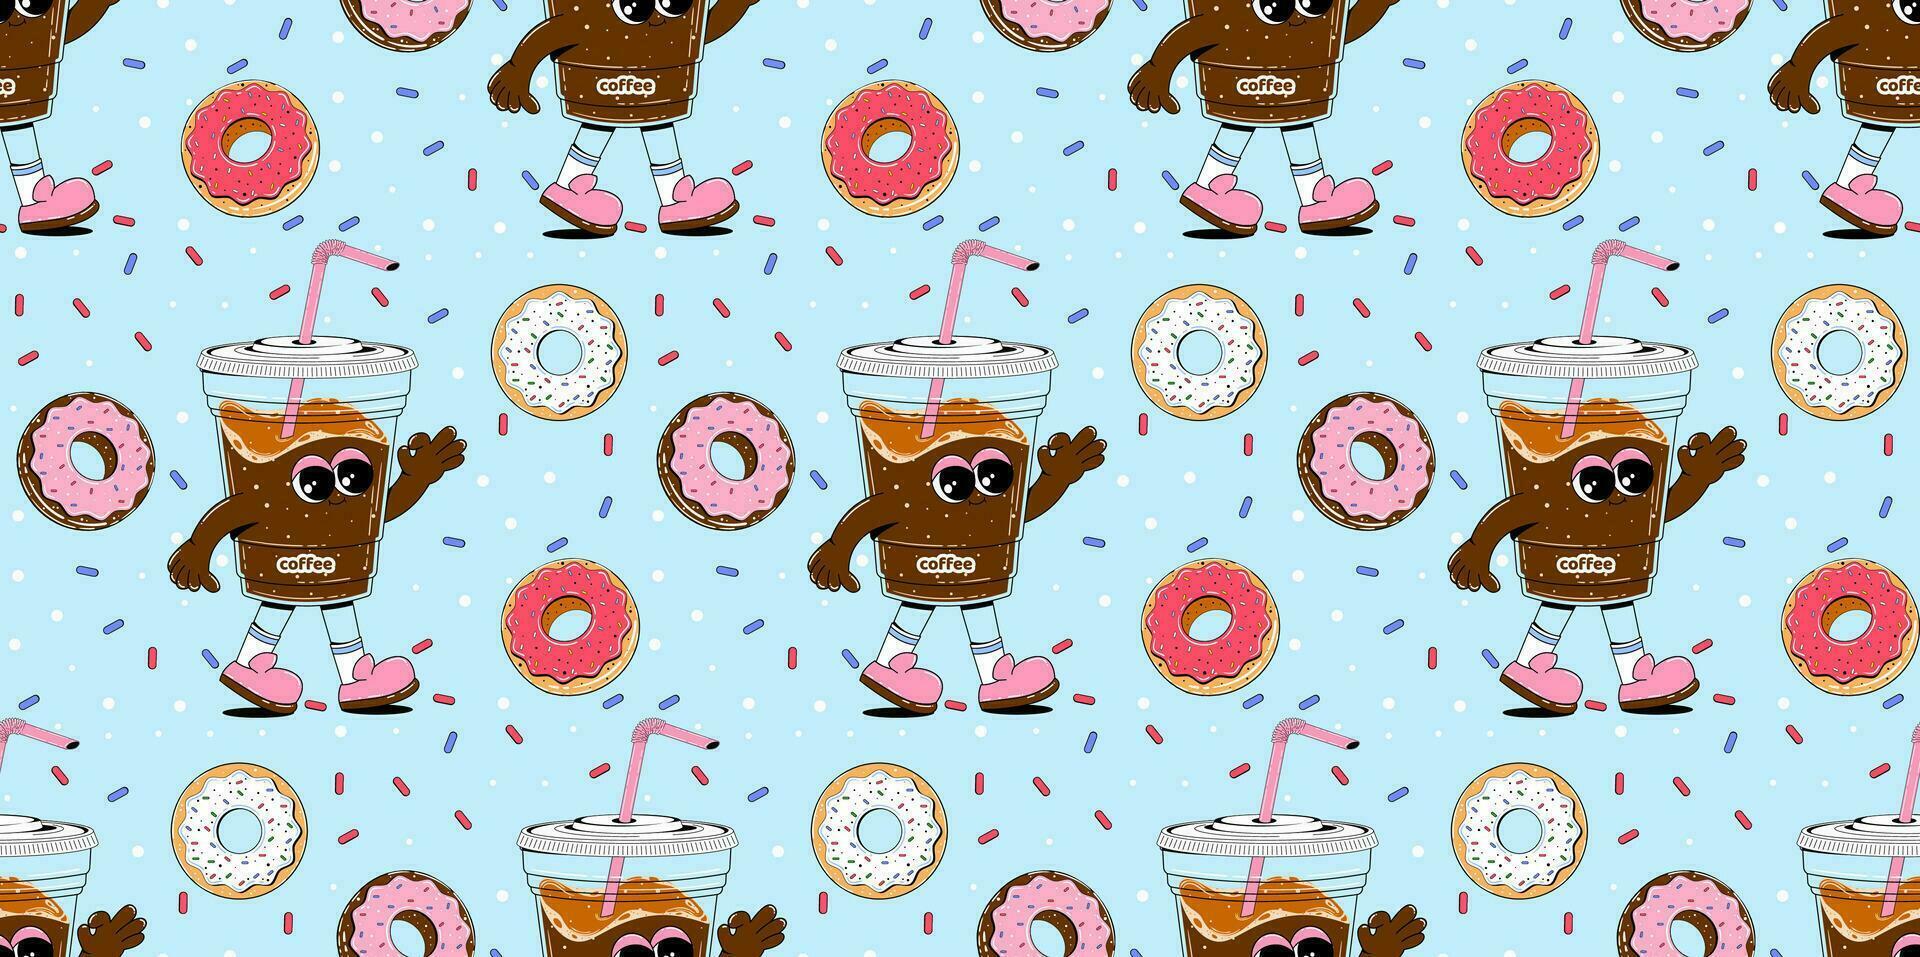 kleurrijk patroon met koffie en donuts karakter in retro tekenfilm stijl. vector naadloos achtergrond in abstract stijl met snoepgoed voor cafés, restaurants, menu's.